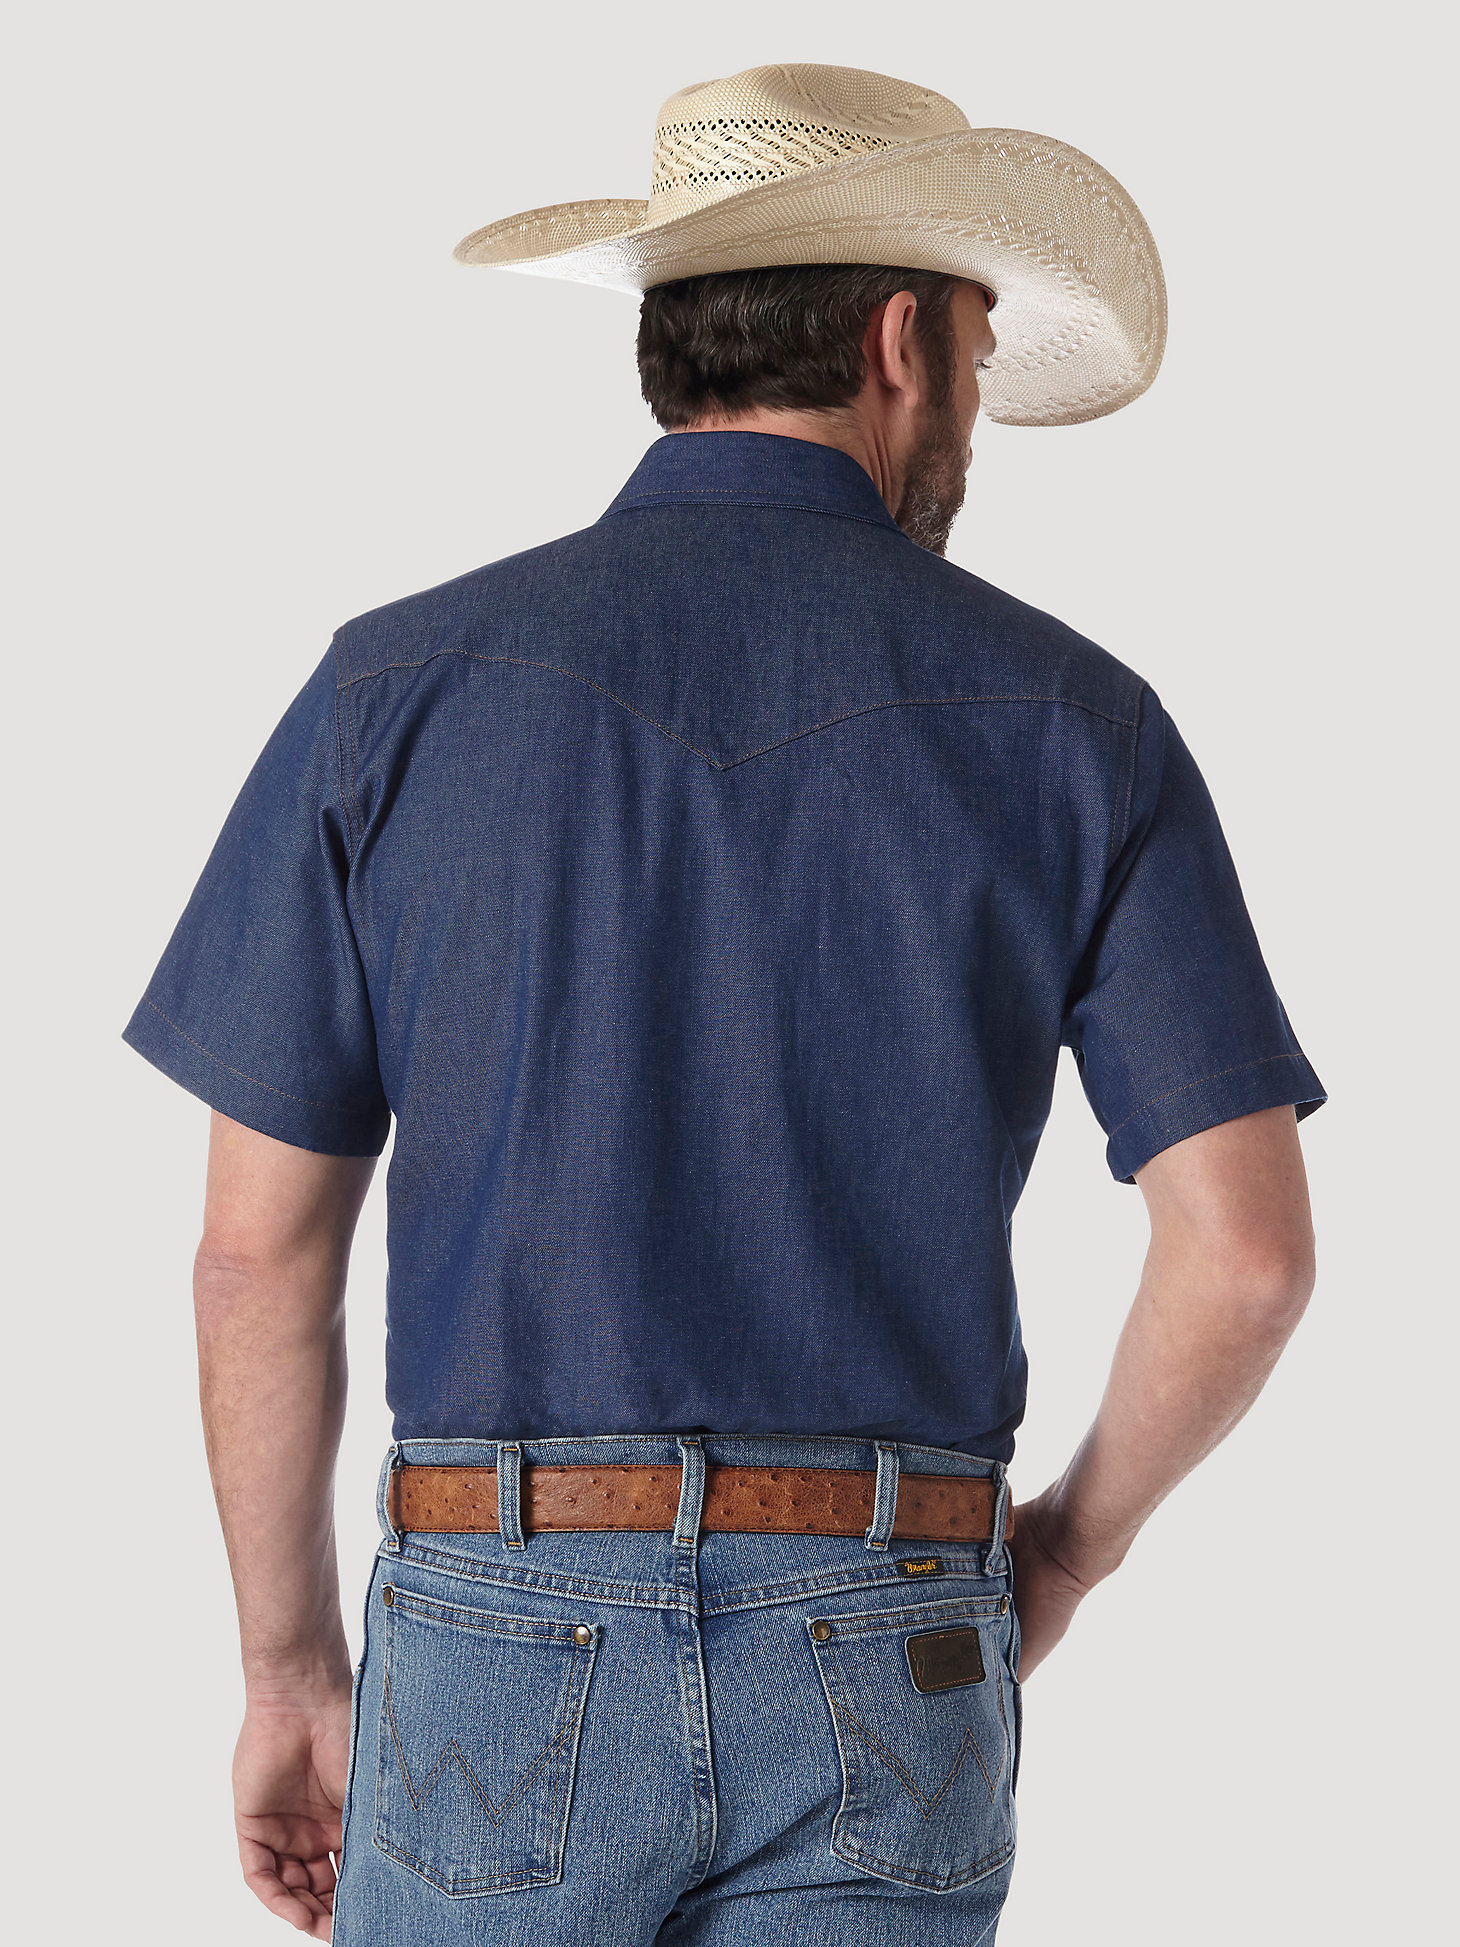 Cowboy Cut® Firm Finish Denim Short Sleeve Work Western Shirt in Rigid Indigo alternative view 6